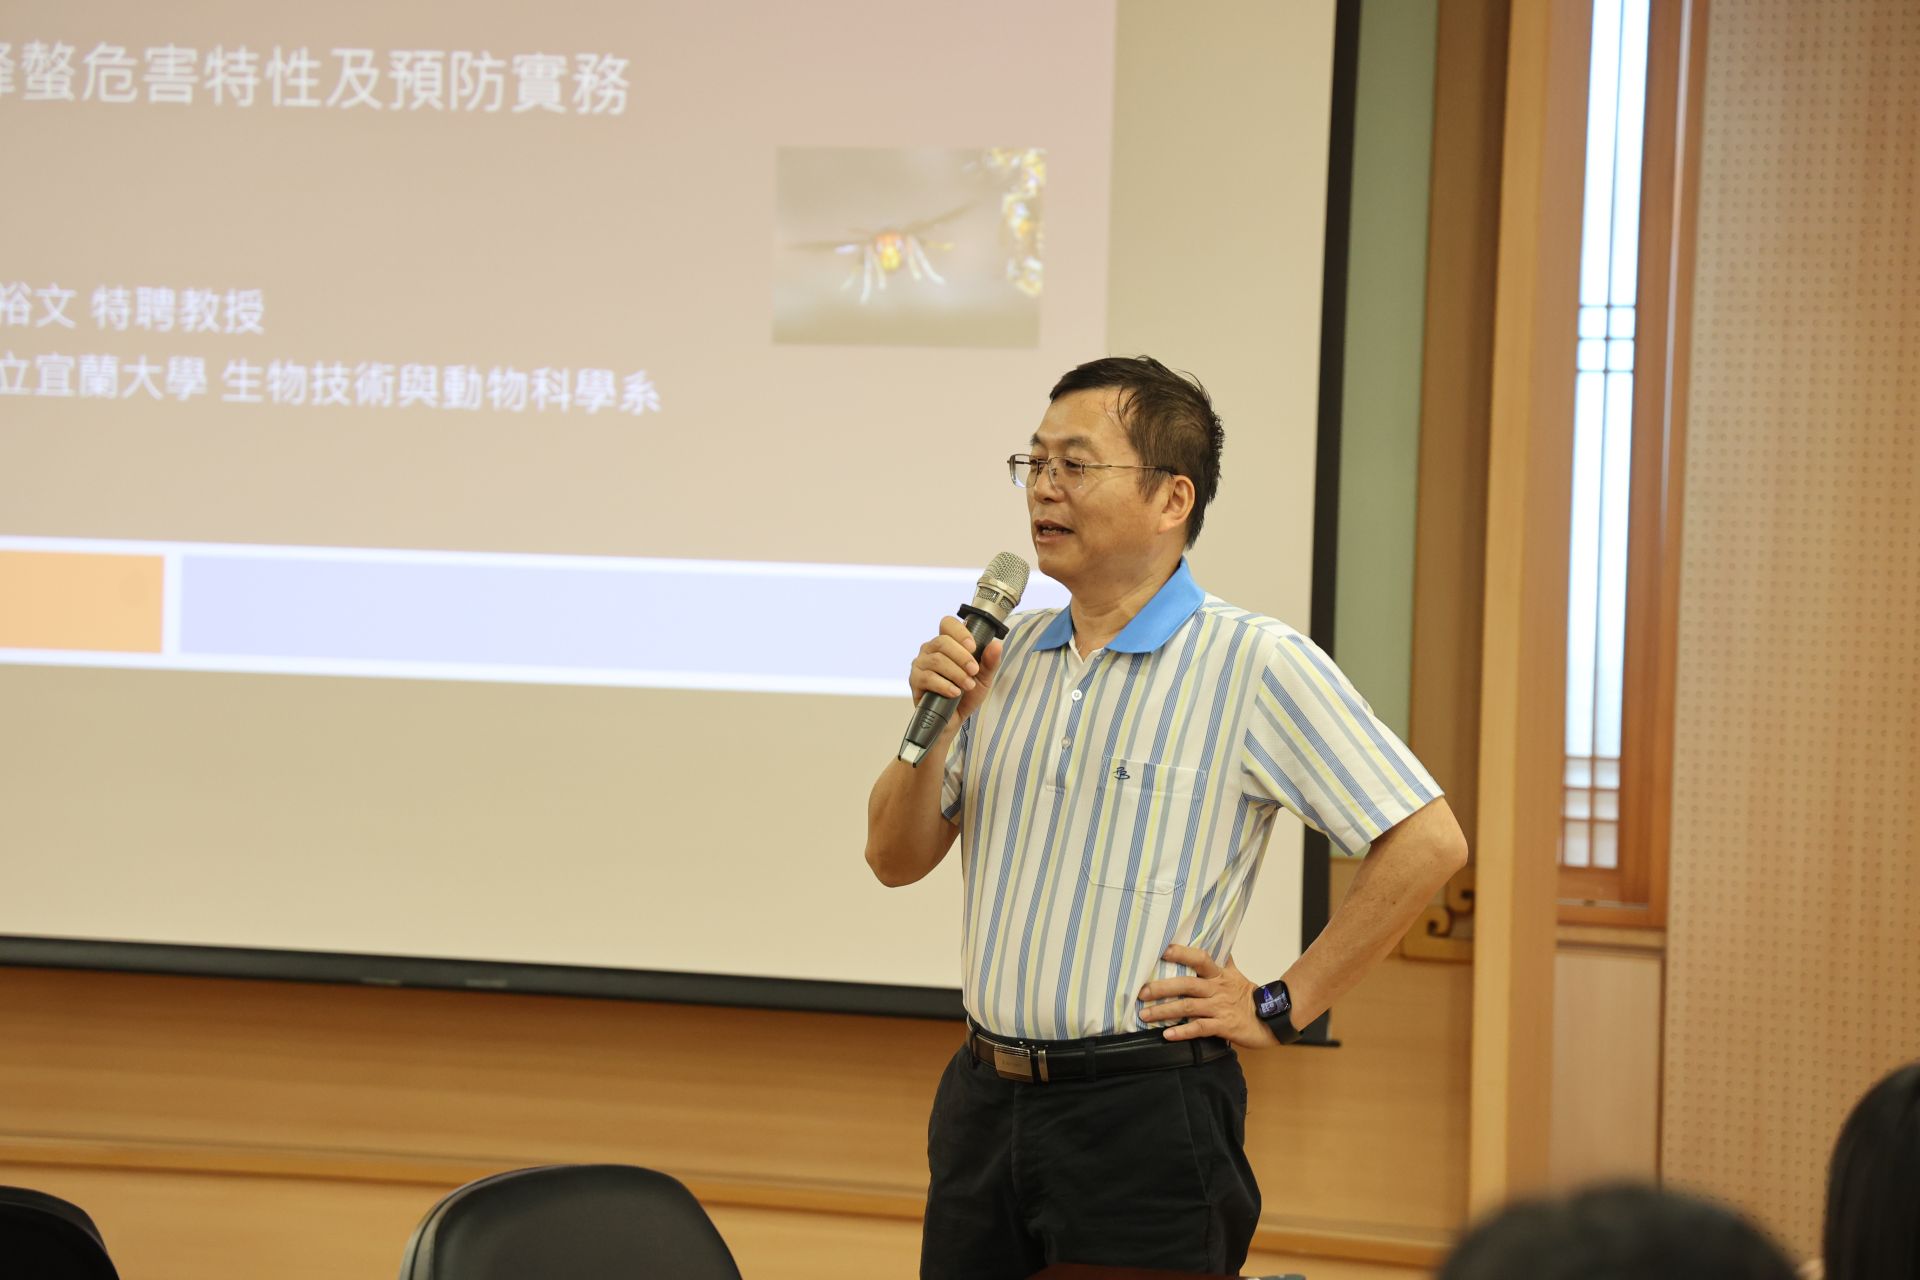 宜蘭大學生物技術與動物科學系特聘教授陳裕文分享如何預防被蜂螫的秘訣。